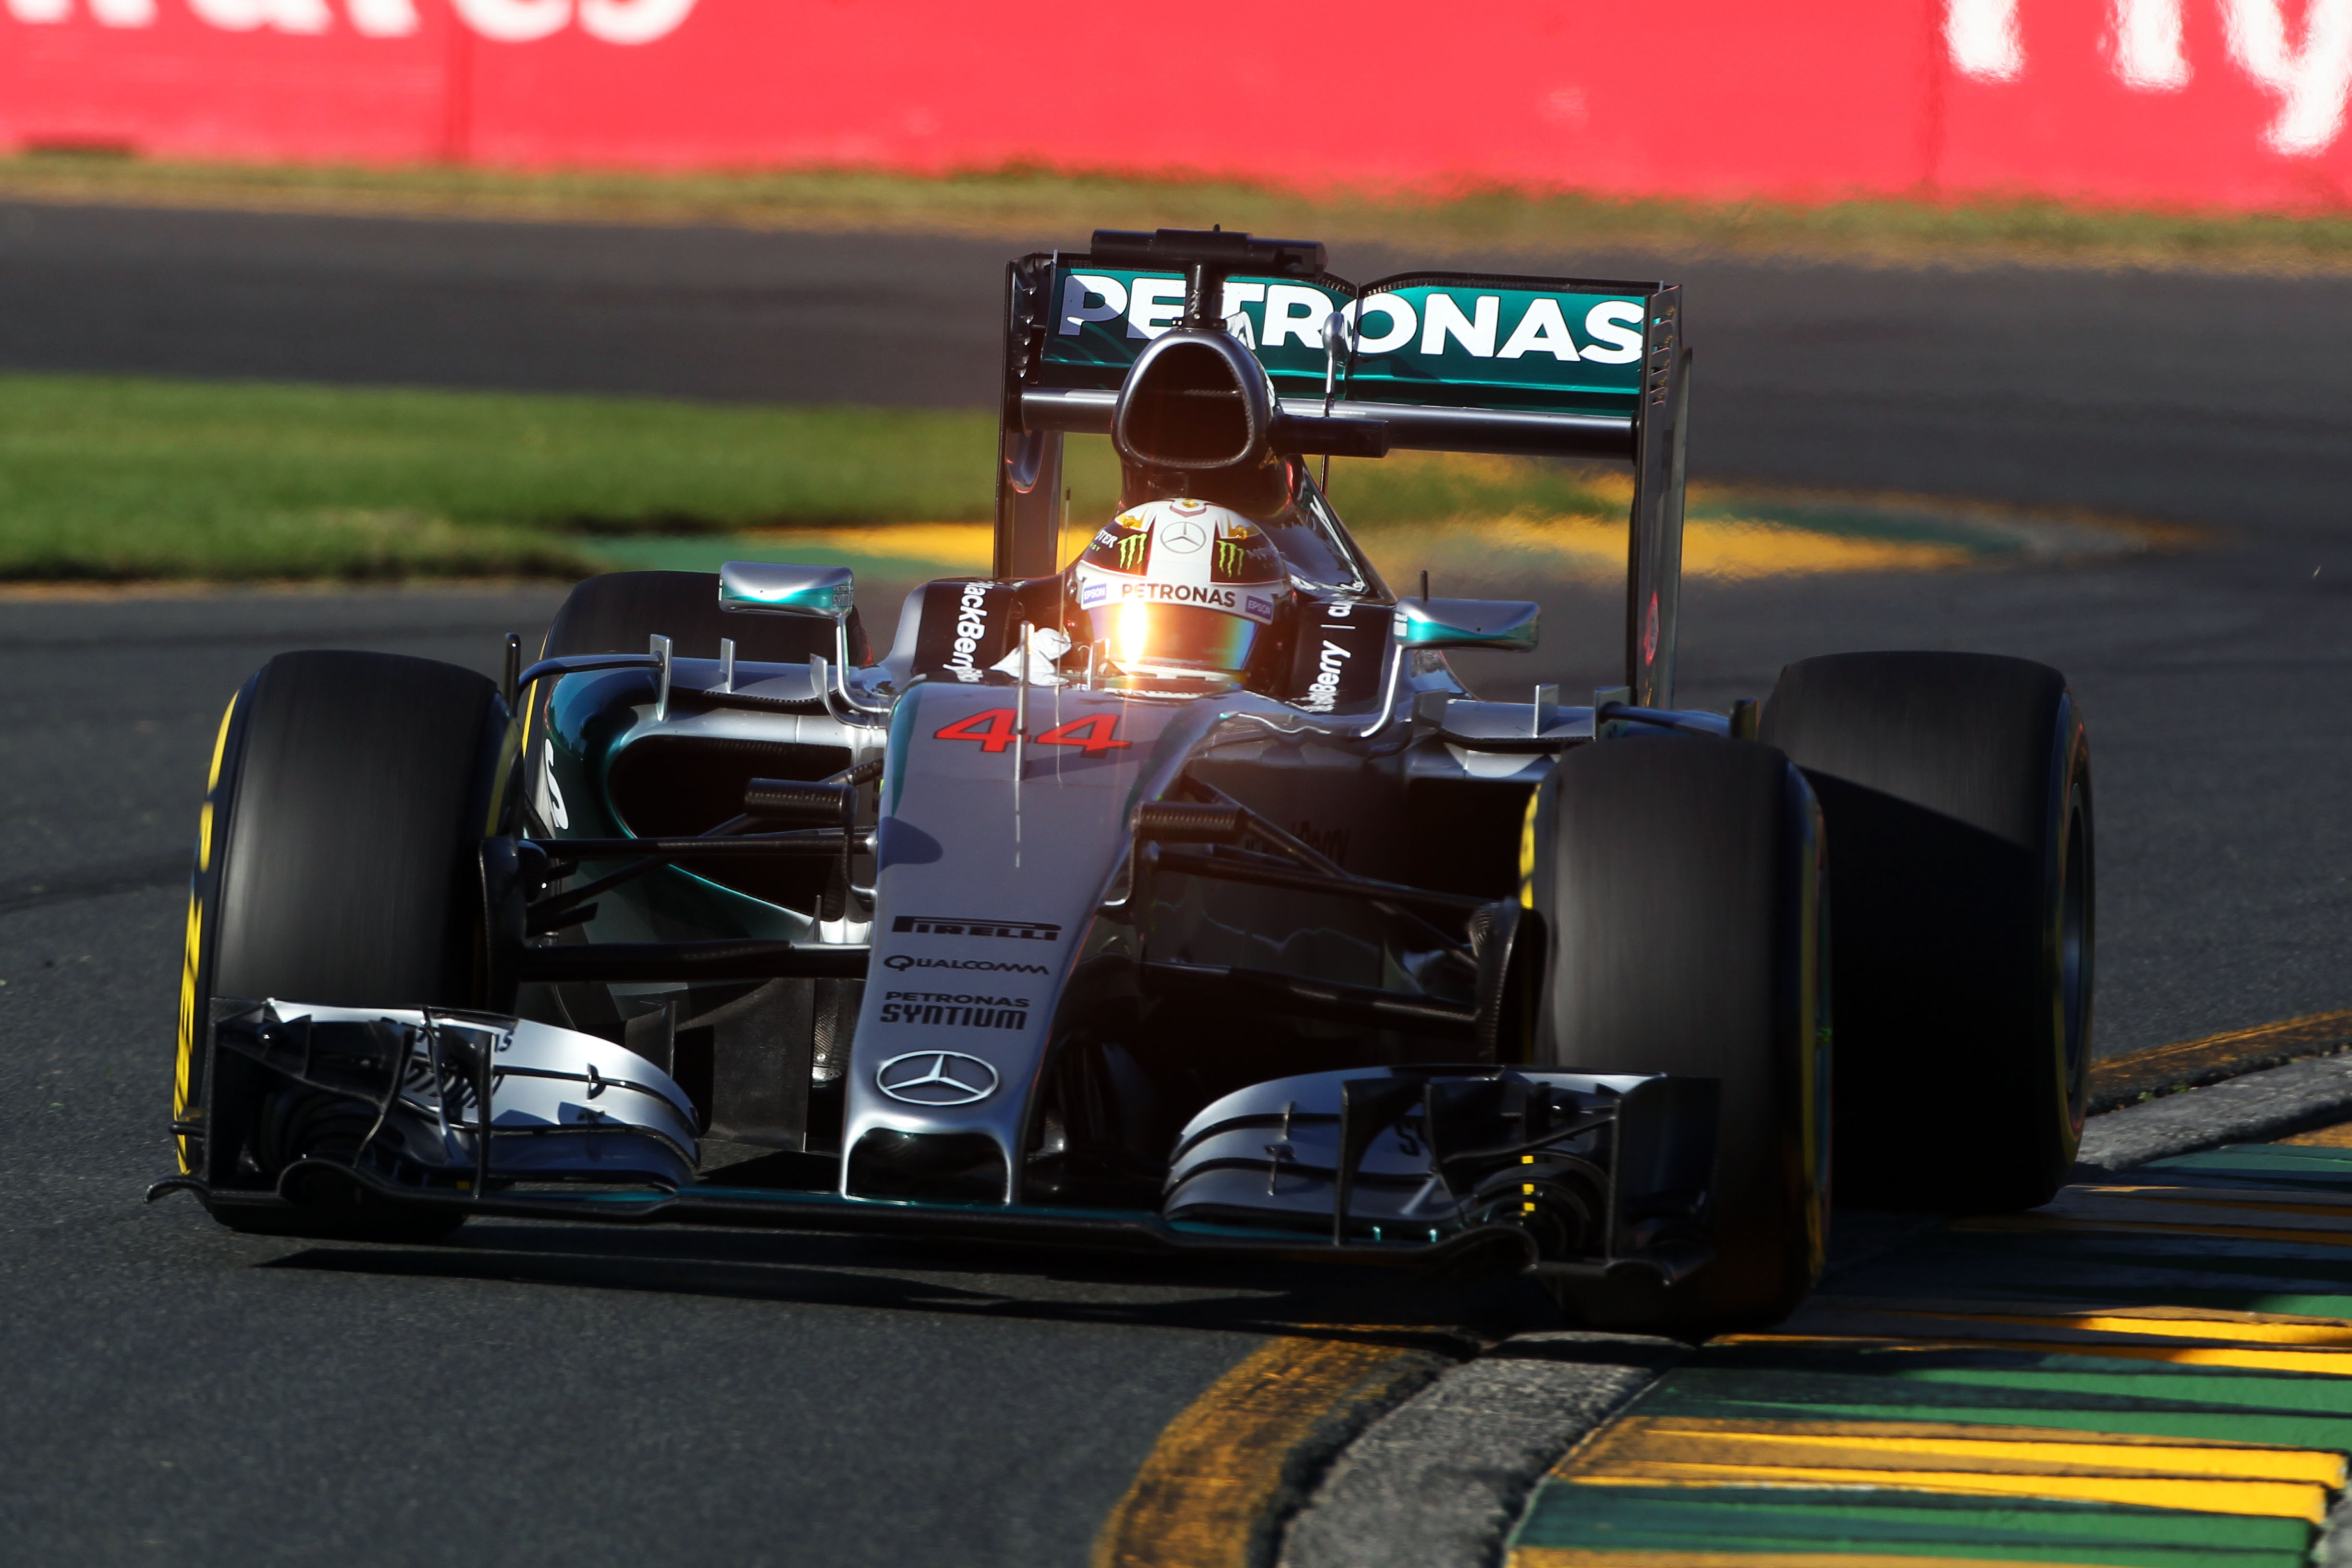 Kwalificatie: Hamilton op pole, Verstappen twaalfde